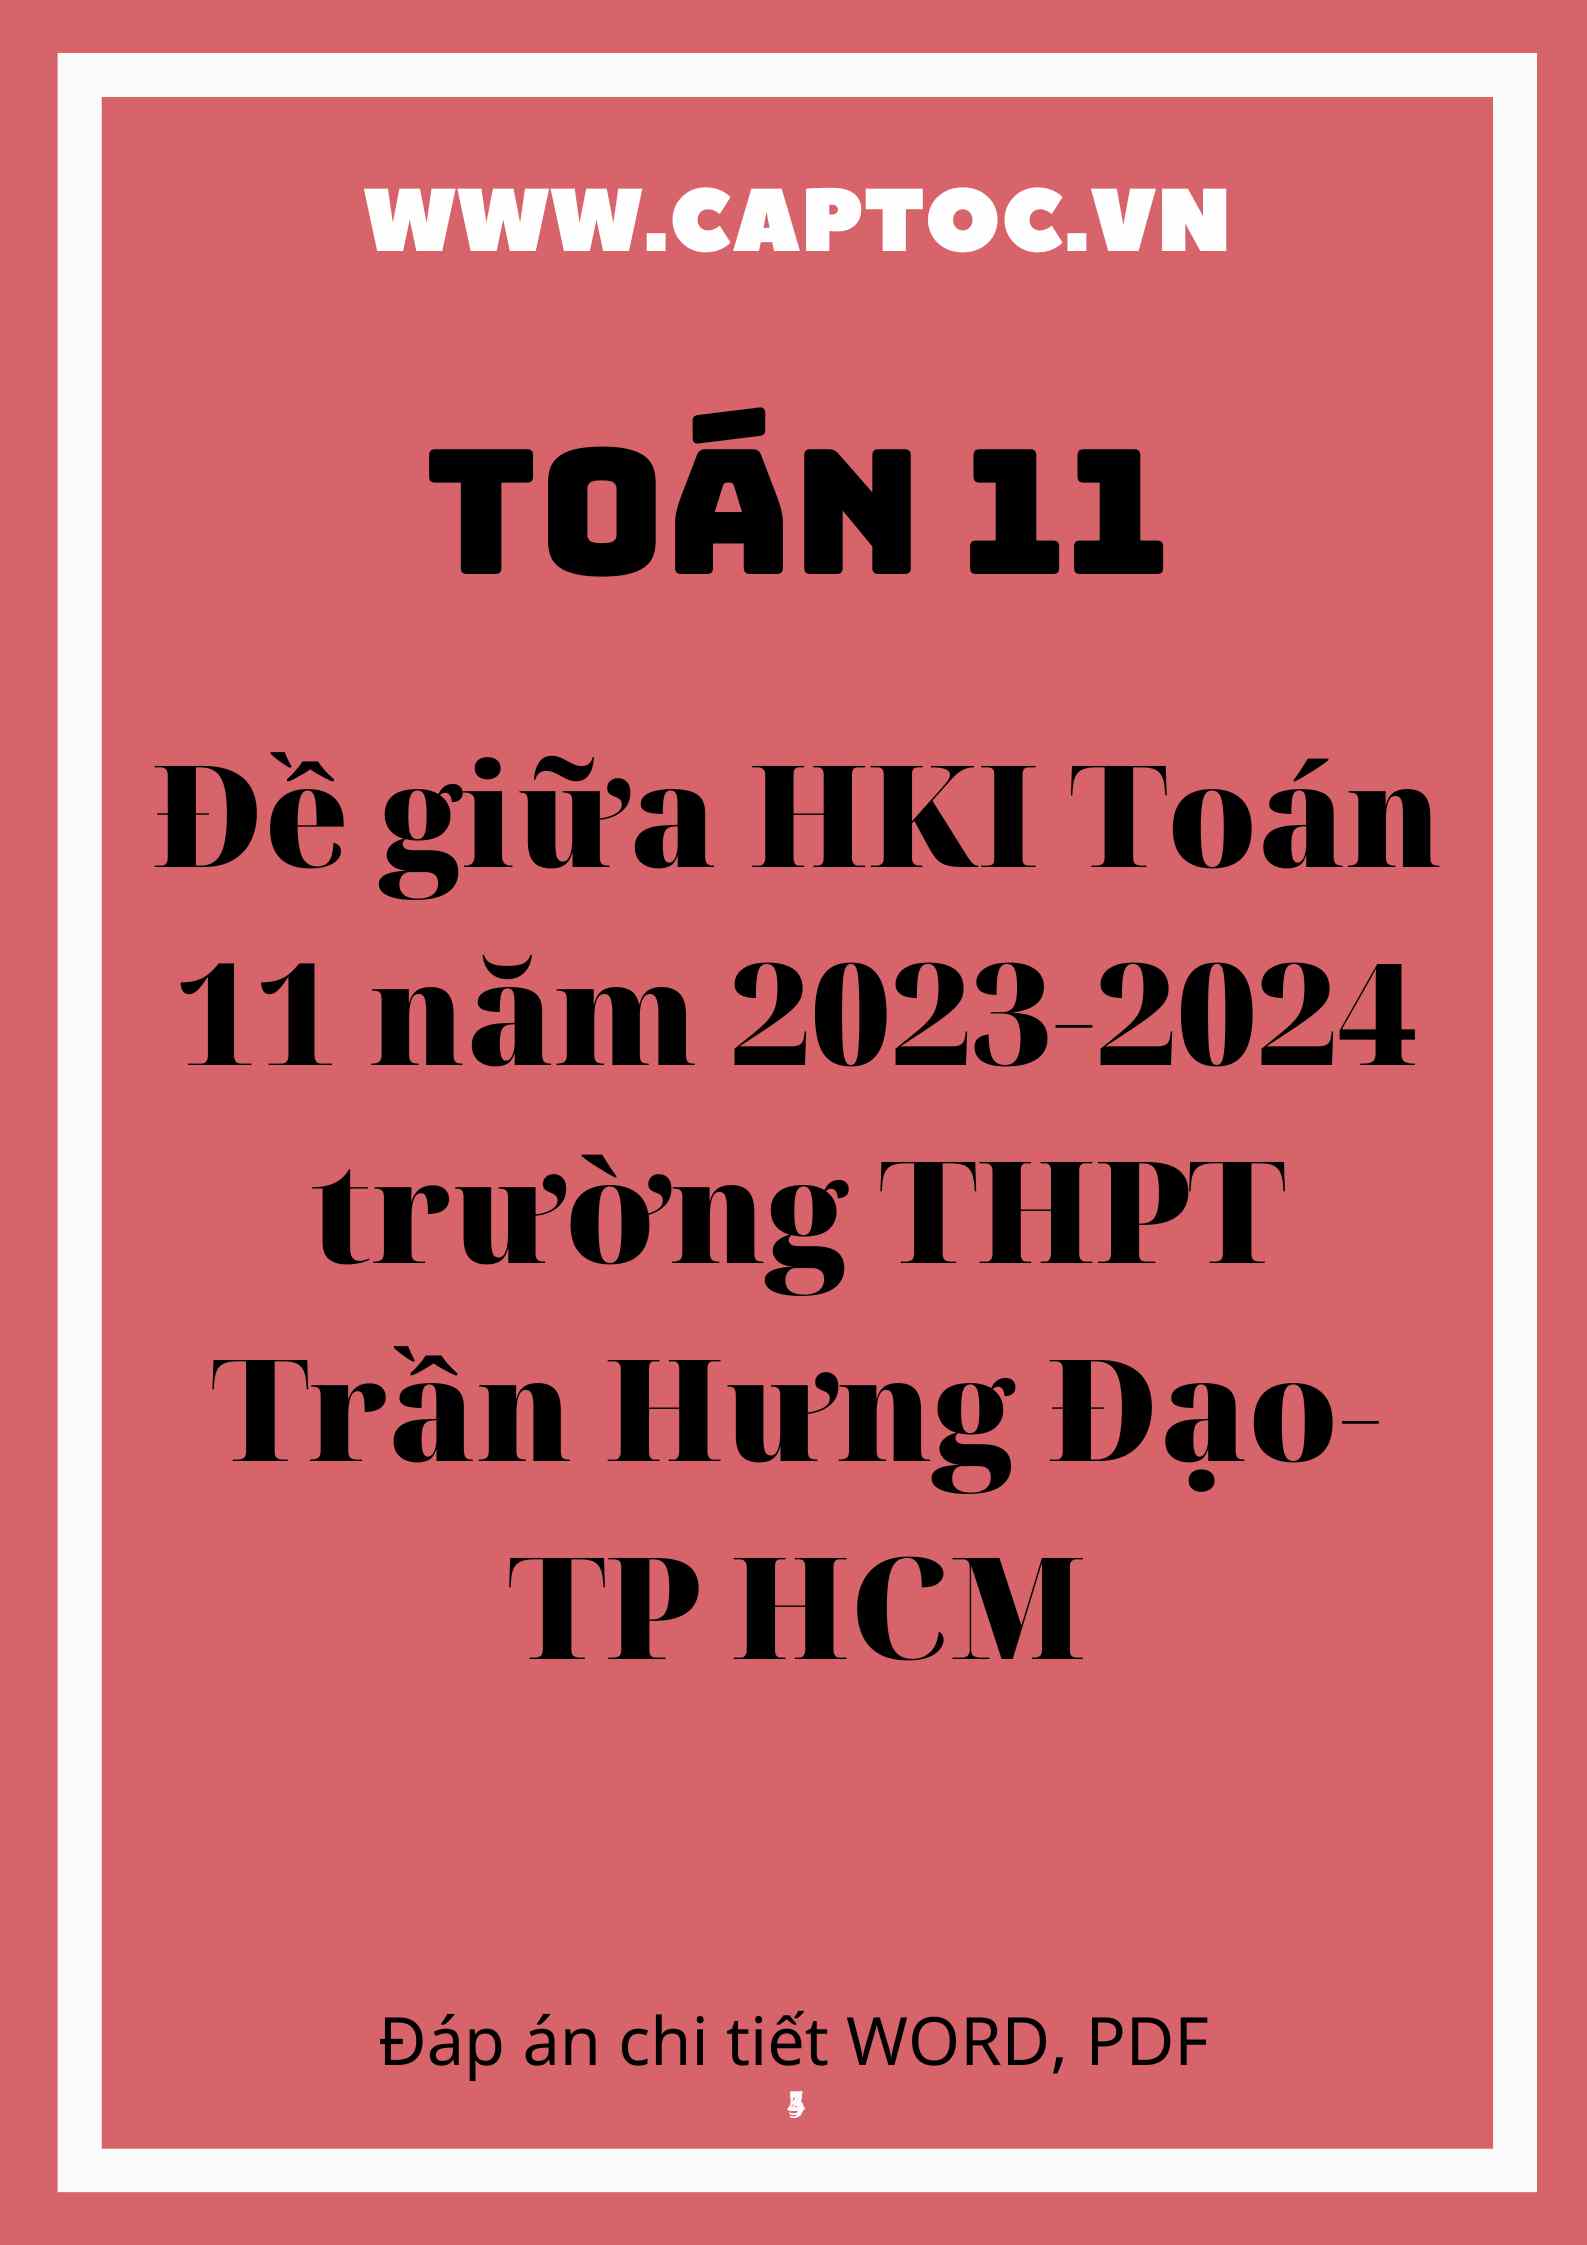 Đề giữa HKI Toán 11 năm 2023-2024 trường THPT Trần Hưng Đạo-TP HCM